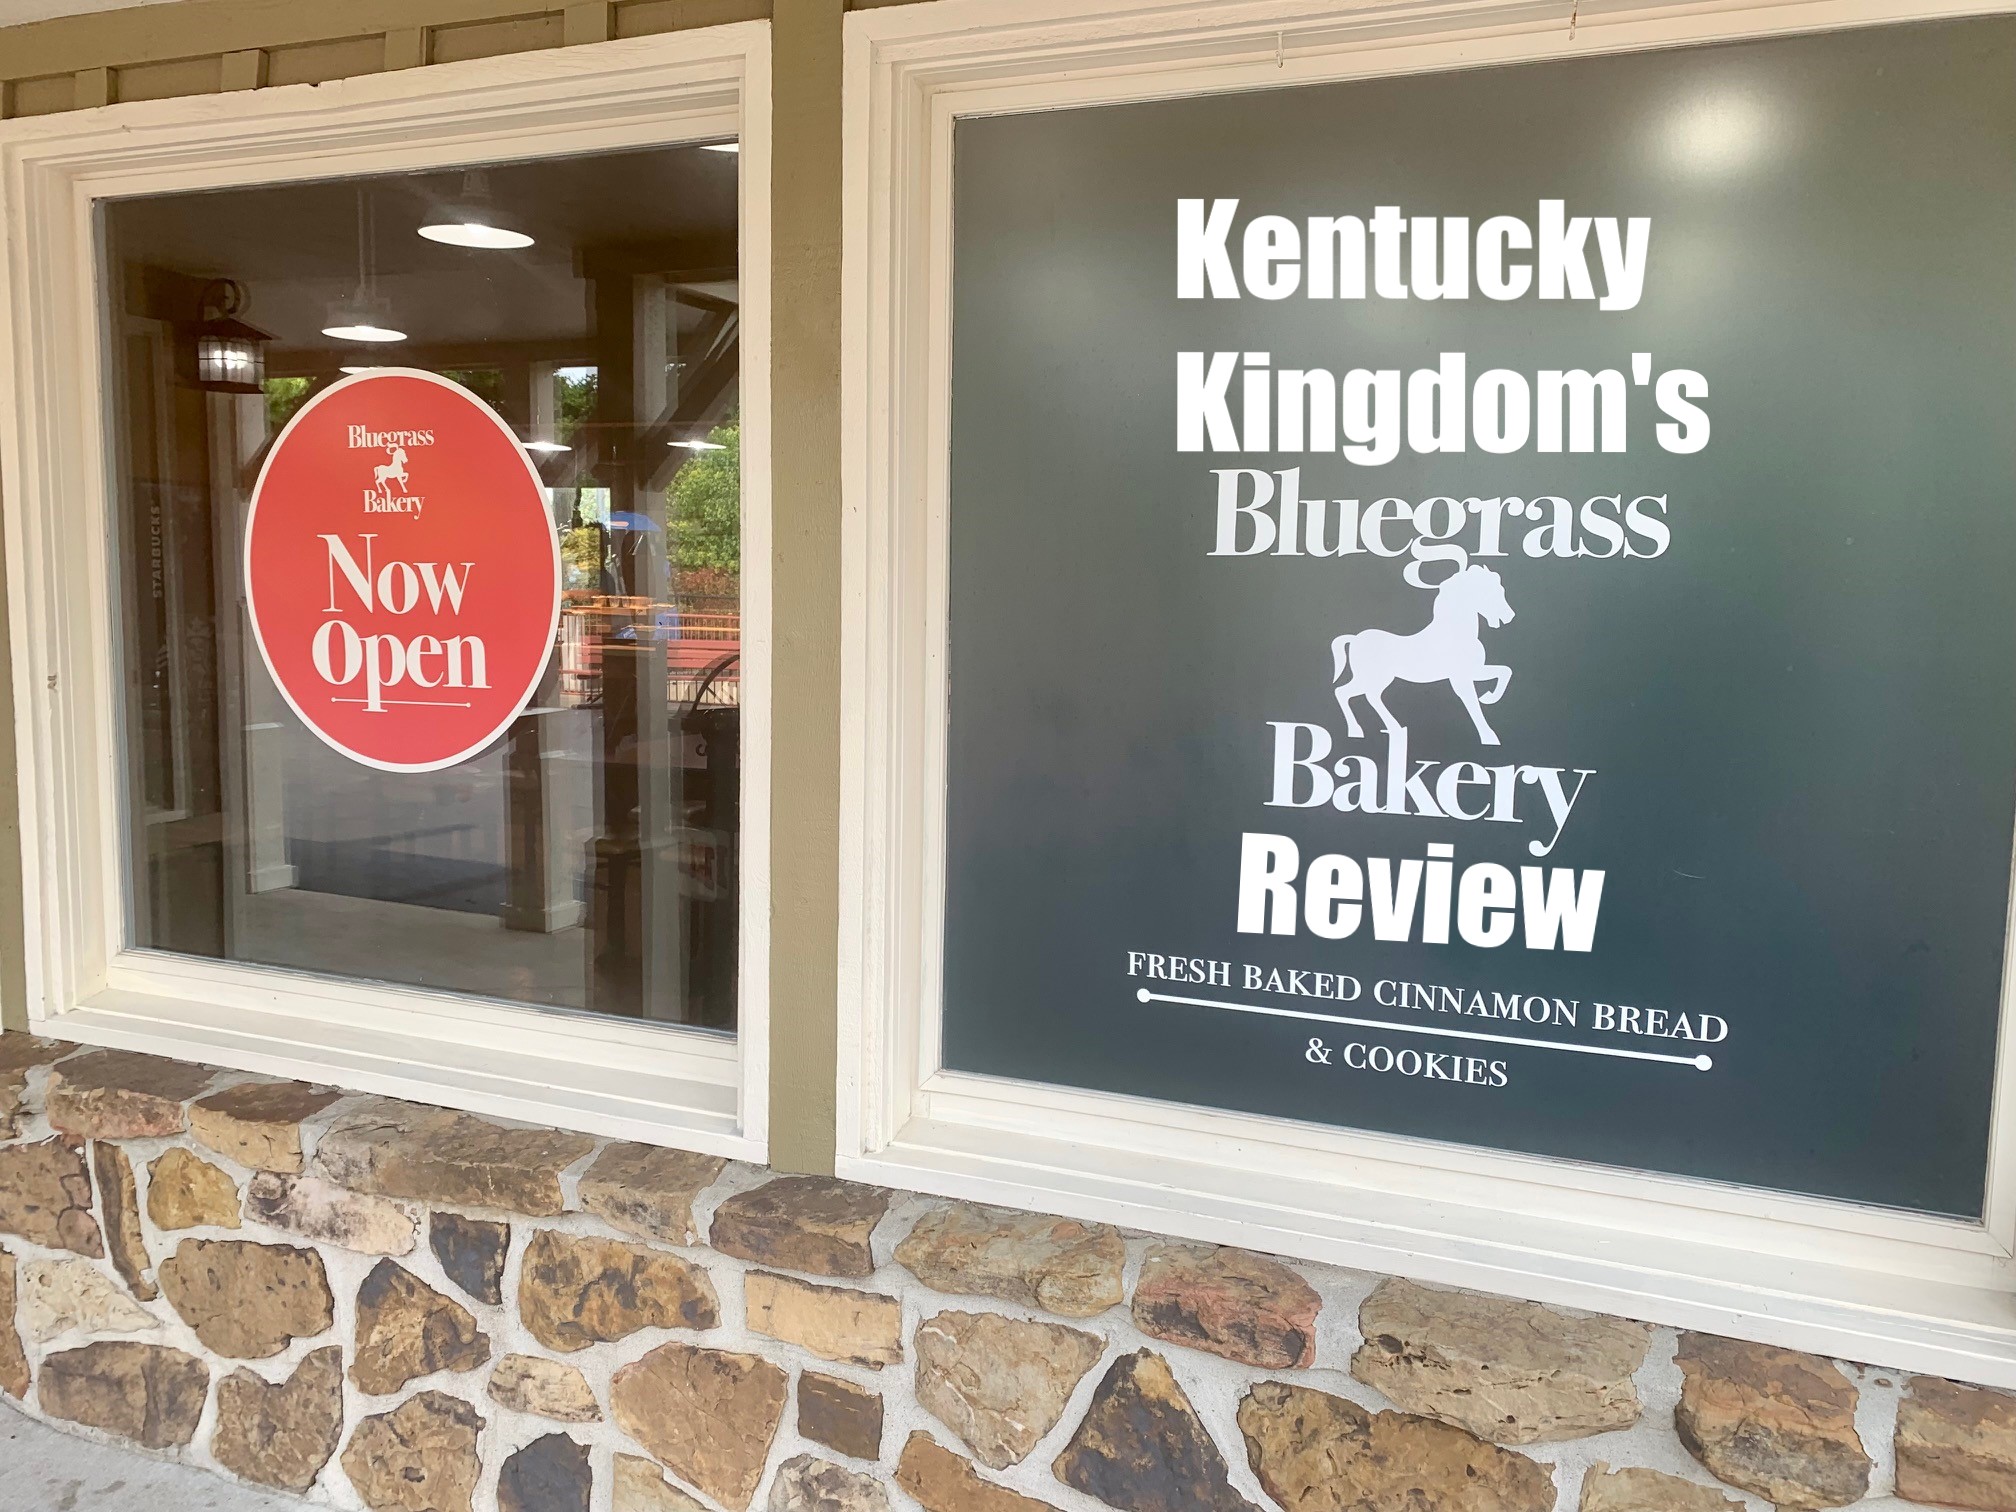 Bluegrass Bakery Review 